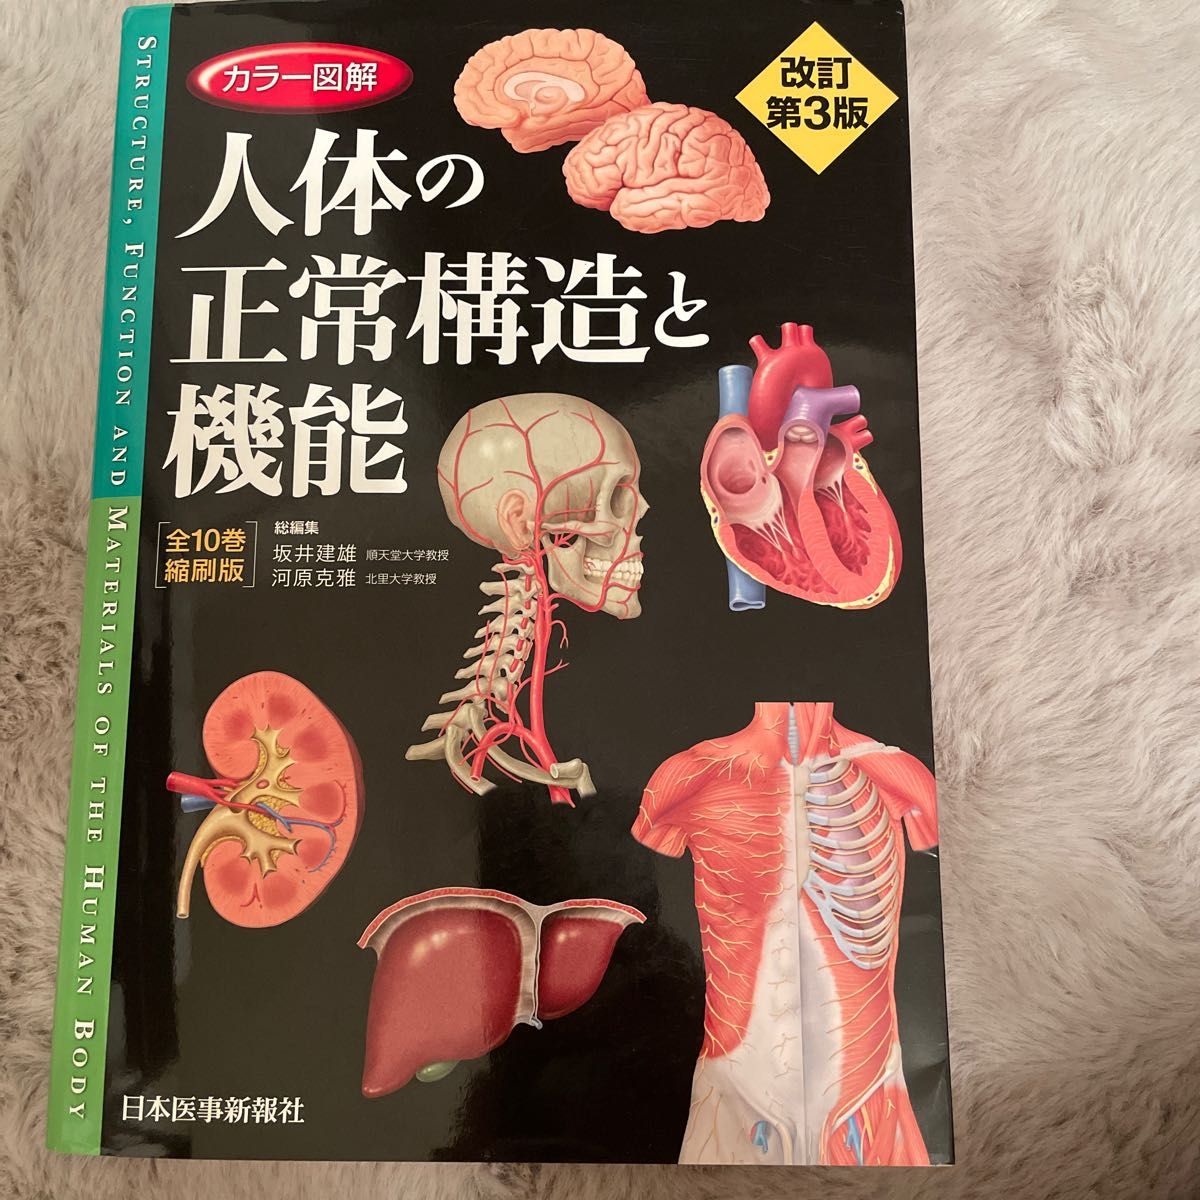 驚きの値段で 【医療通訳】ぜんぶわかる人体解剖図 中国語 健康/医学